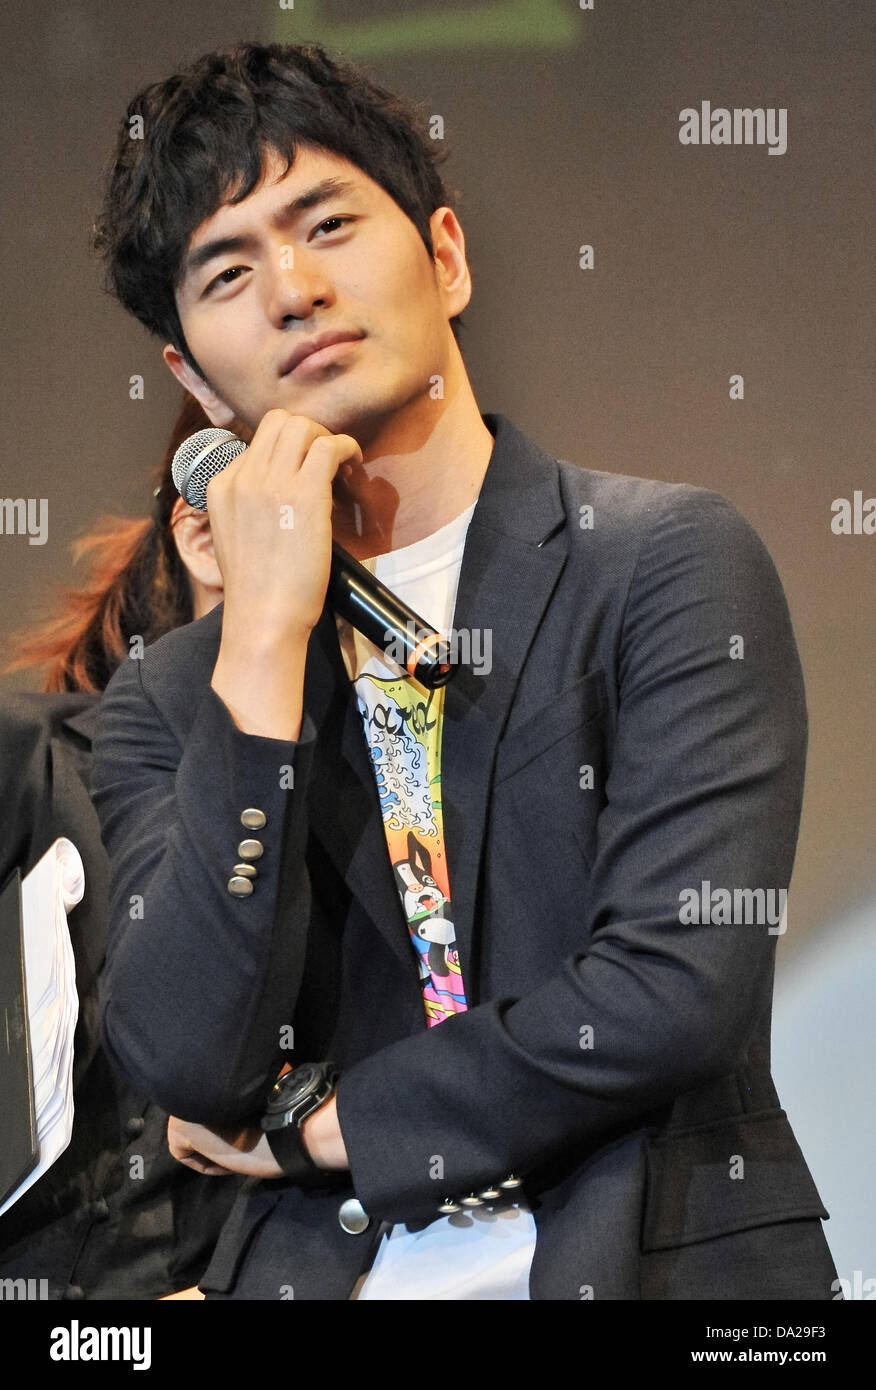 Lee Jin-wook, Jun 30, 2013 : Tokyo, Japan : Korean actor Lee Jin wook  attends a fan service event in Tokyo, Japan, on June 30, 2013 Stock Photo -  Alamy